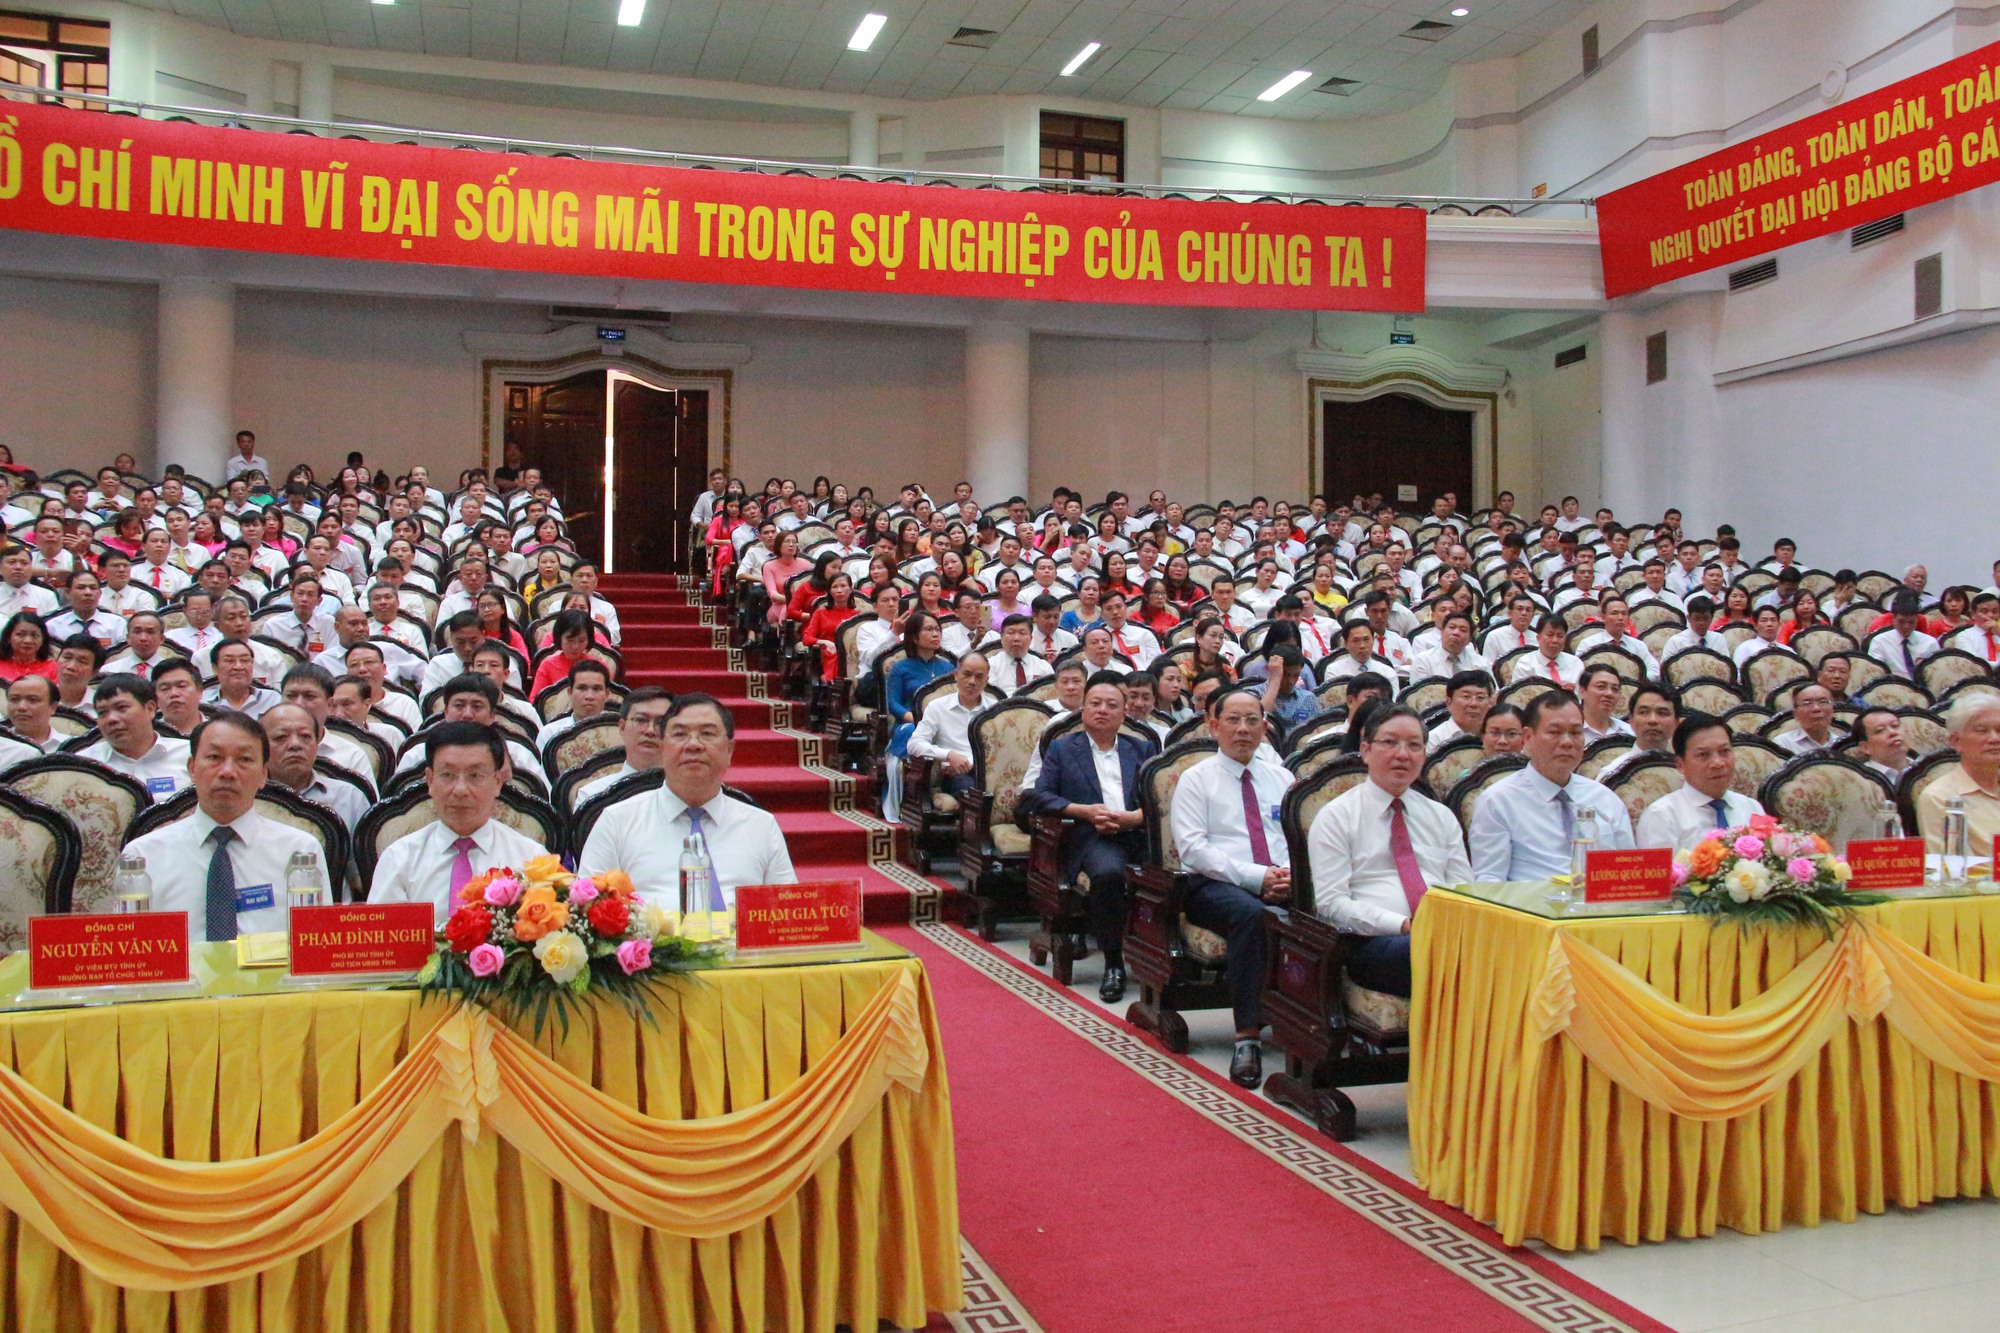 Chủ tịch Hội NDVN, Bí thư Tỉnh ủy Nam Định dự, chỉ đạo Đại hội đại biểu Hội Nông dân tỉnh Nam Định  - Ảnh 1.